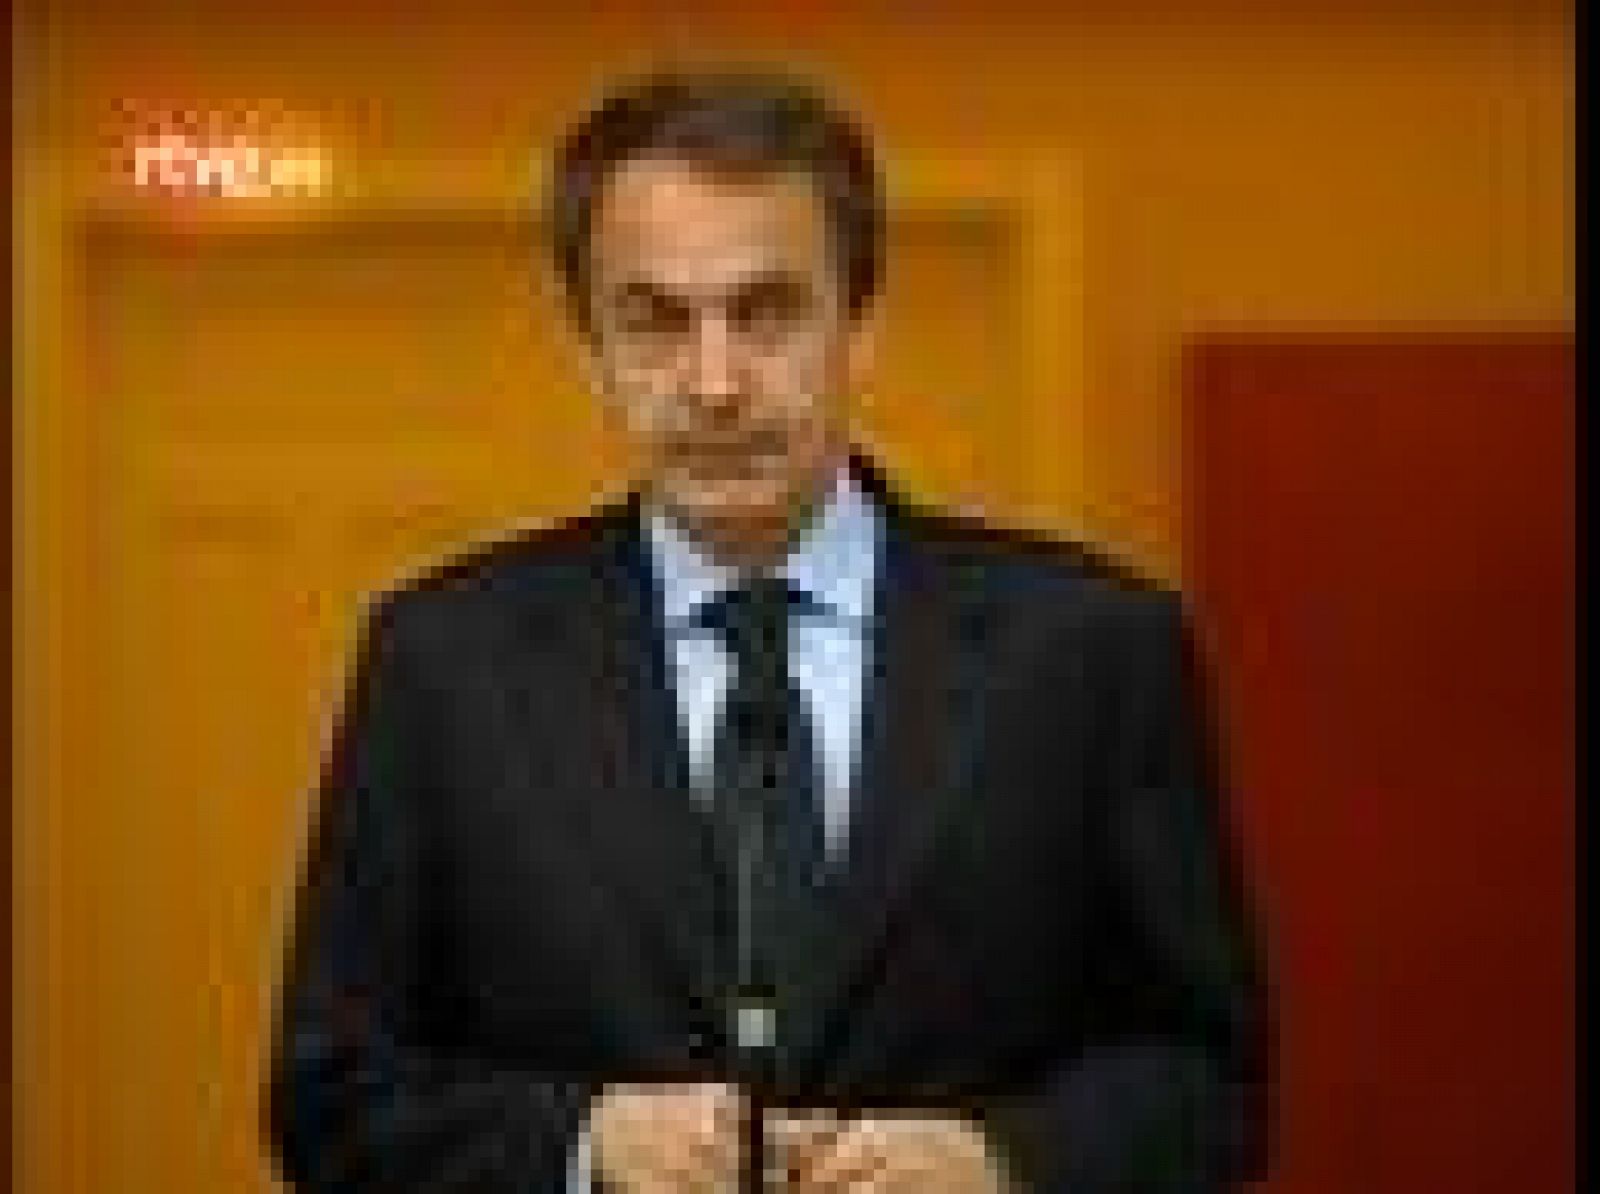 El presidente del Gobierno, José Luis Rodríguez Zapatero, ha sido todo elogios hacia Juan Antonio Samaranch el día en que el ex presidente del COI ha fallecido a los 89 años de edad. El mensaje presidencial se une al aluvión de muestras de condolencia de otros líderes de la política y el deporte. 